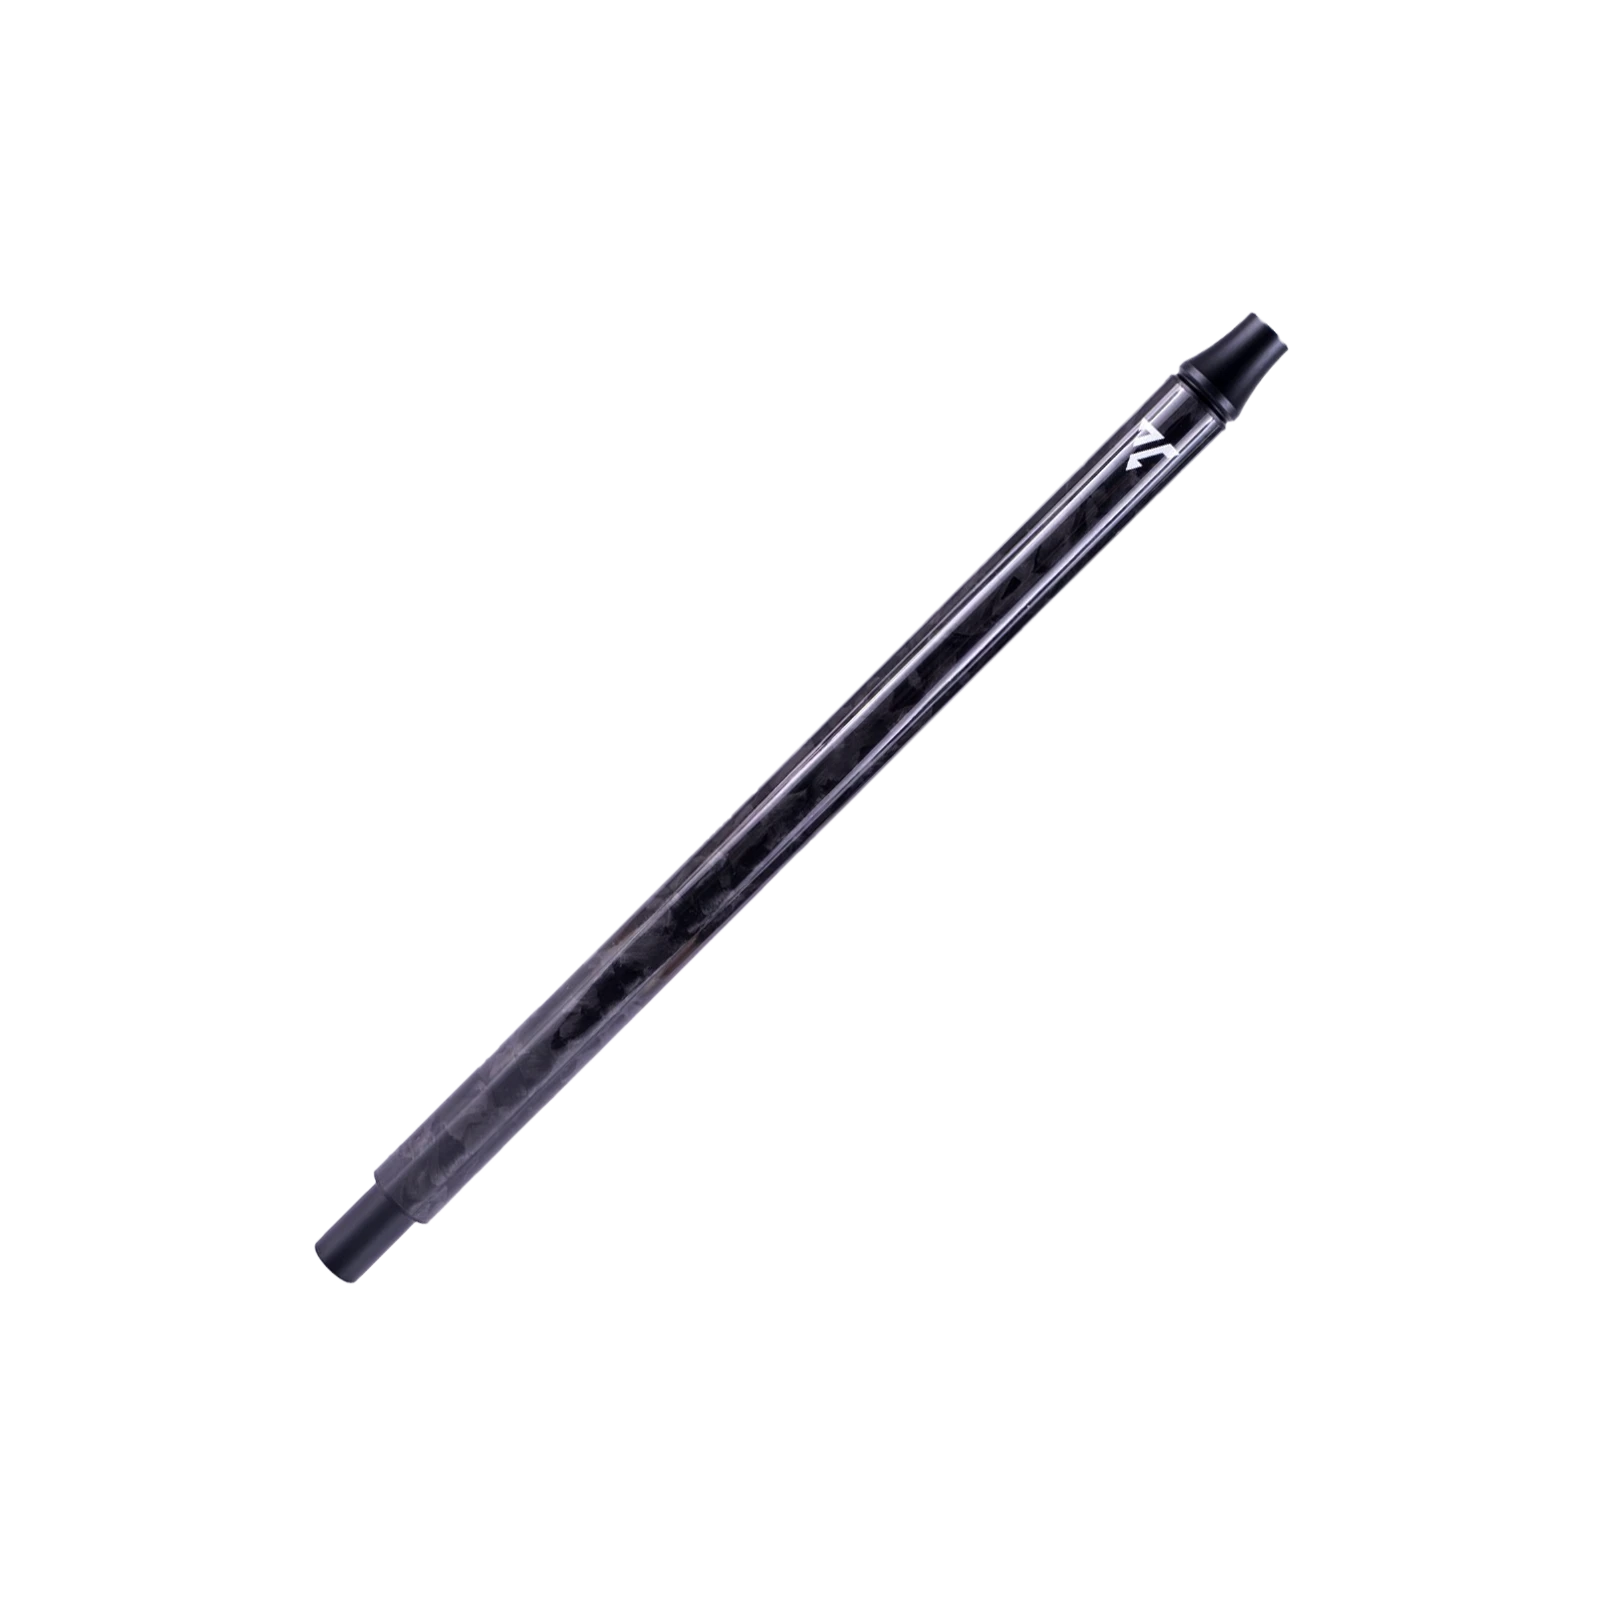 Vyro - Carbon Mundstück - Forged - Black - 30 cm | Shisha online Sale